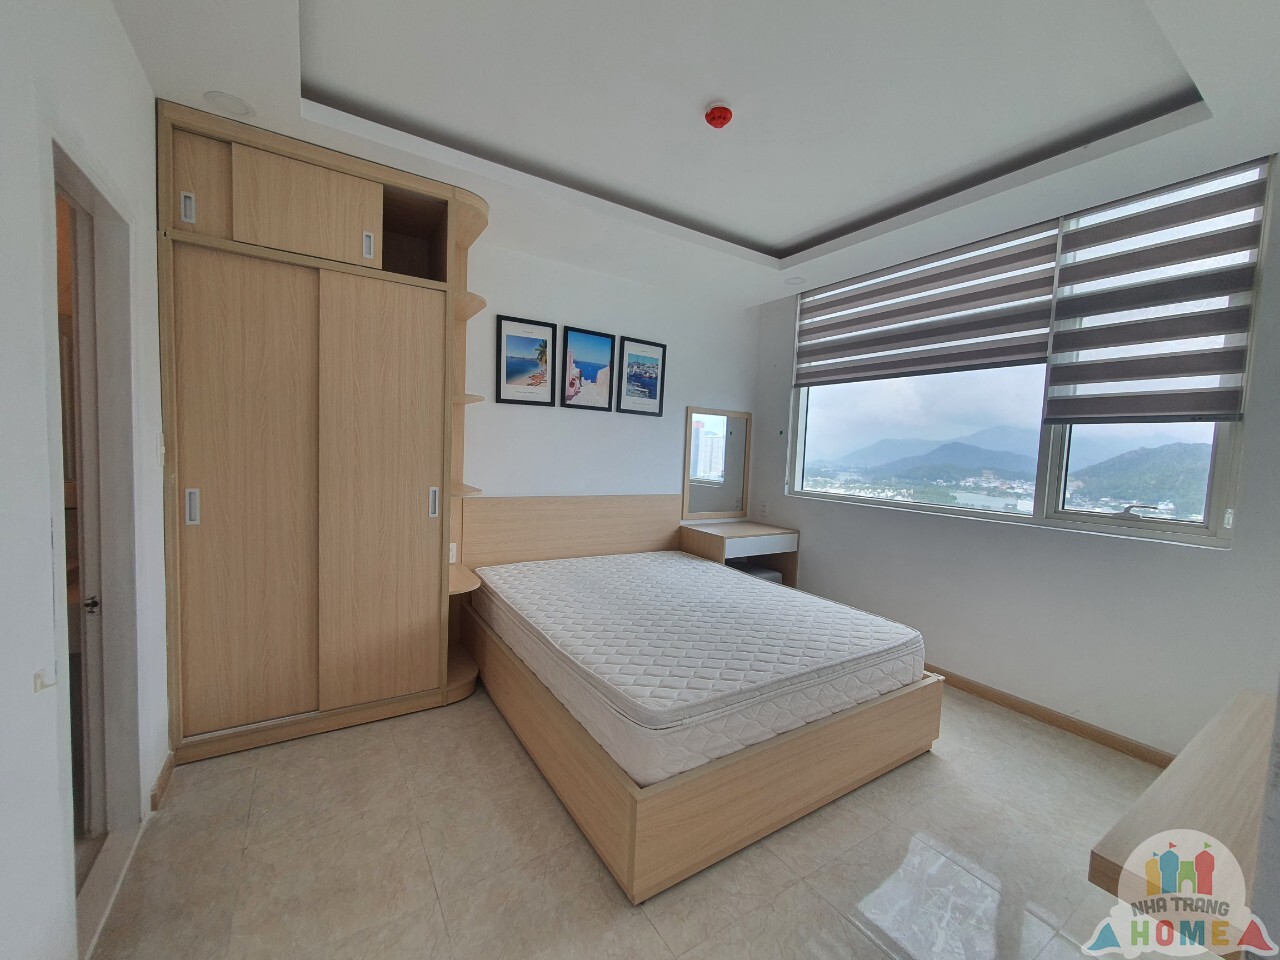 Cho thuê và bán căn hộ mới 2 phòng ngủ tại Mường Thanh Khánh Hòa A152